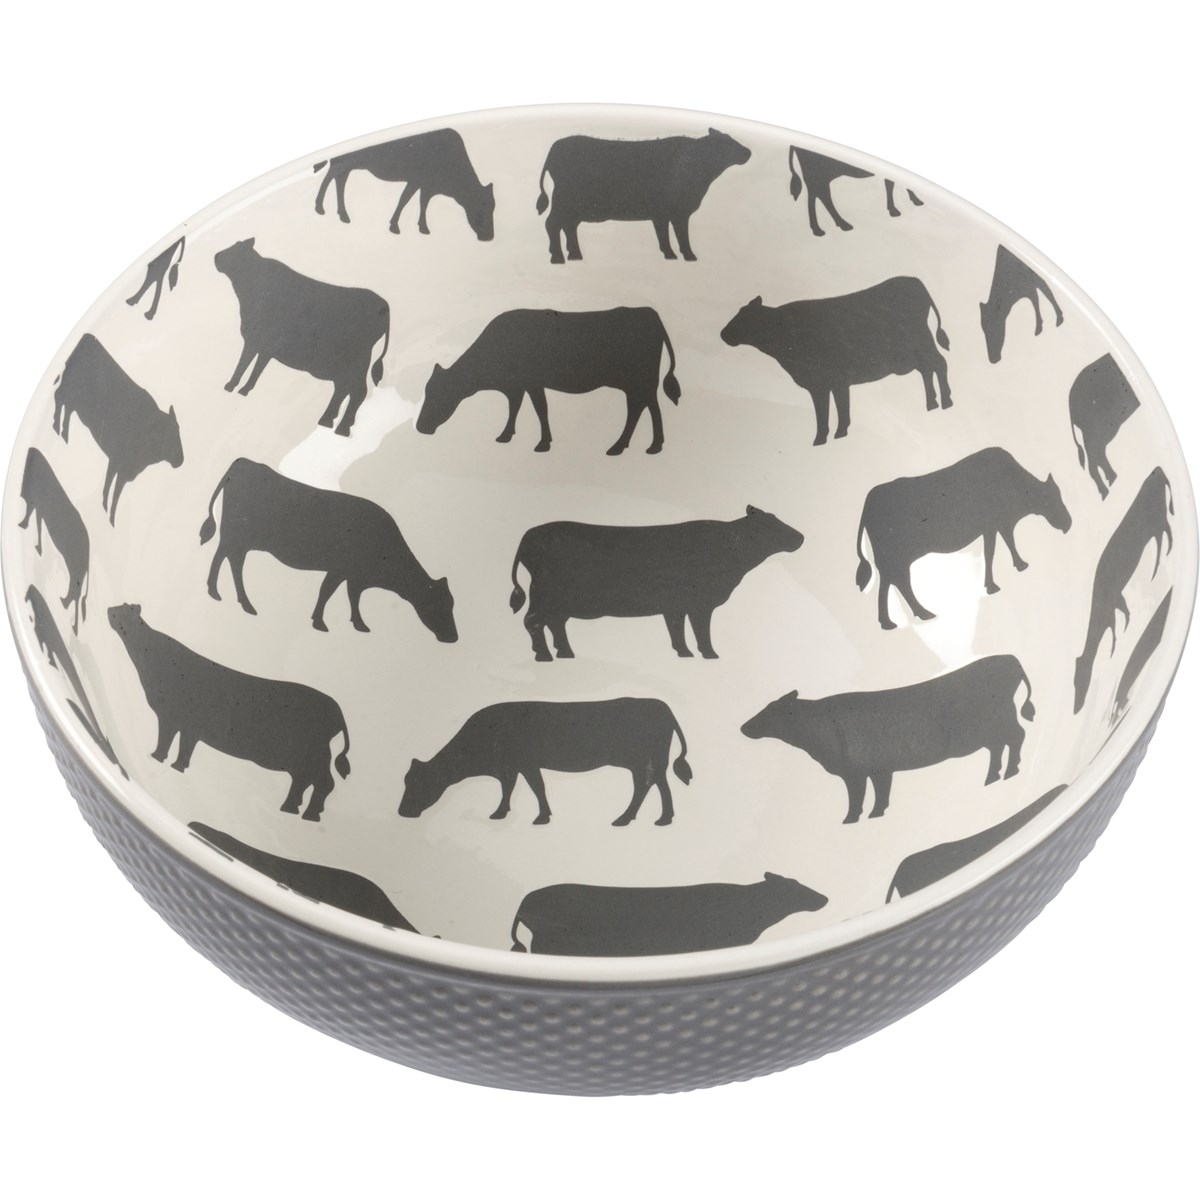 Farm Animals Bowl Set - Stoneware